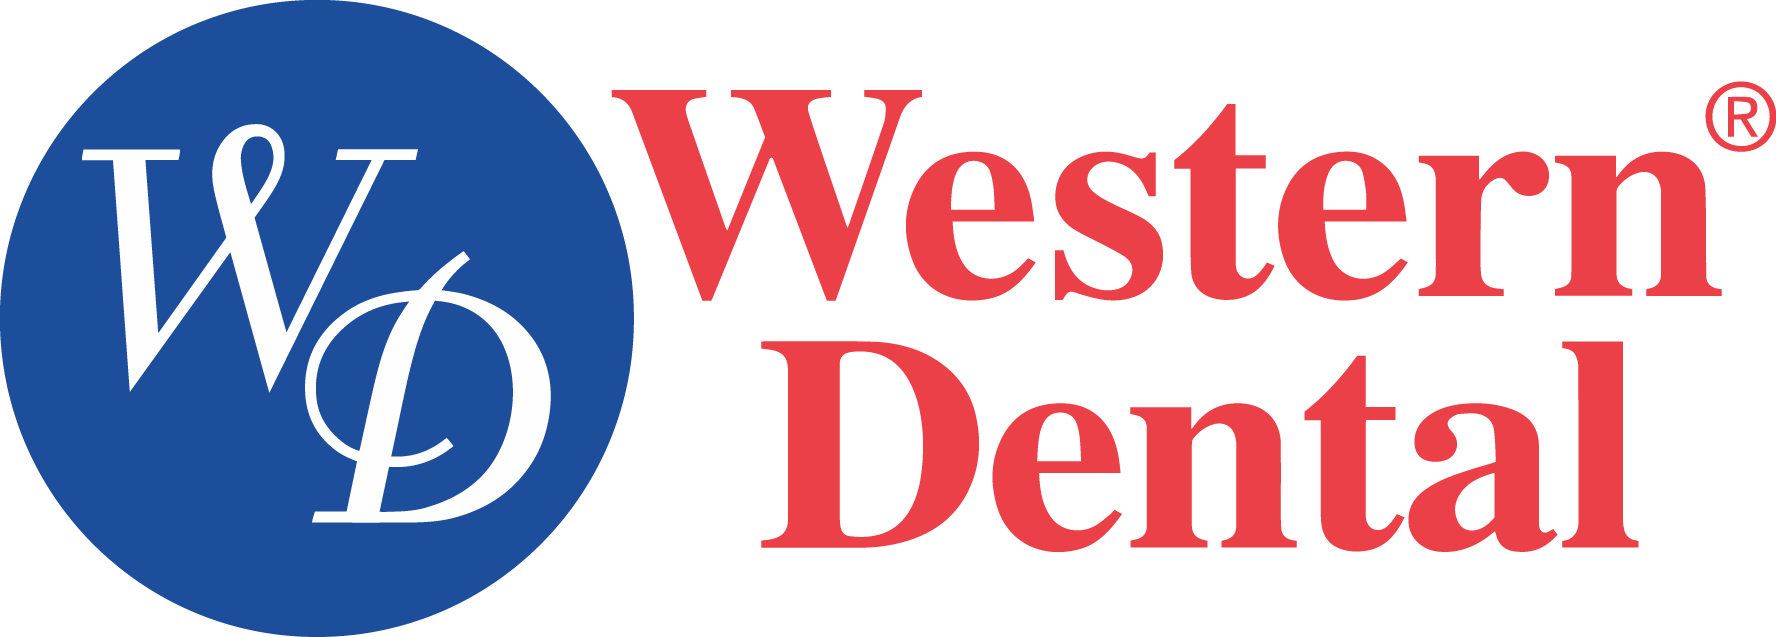 Western Dental Logo - Western Dental Services Inc Logo (1776x637), Png Download